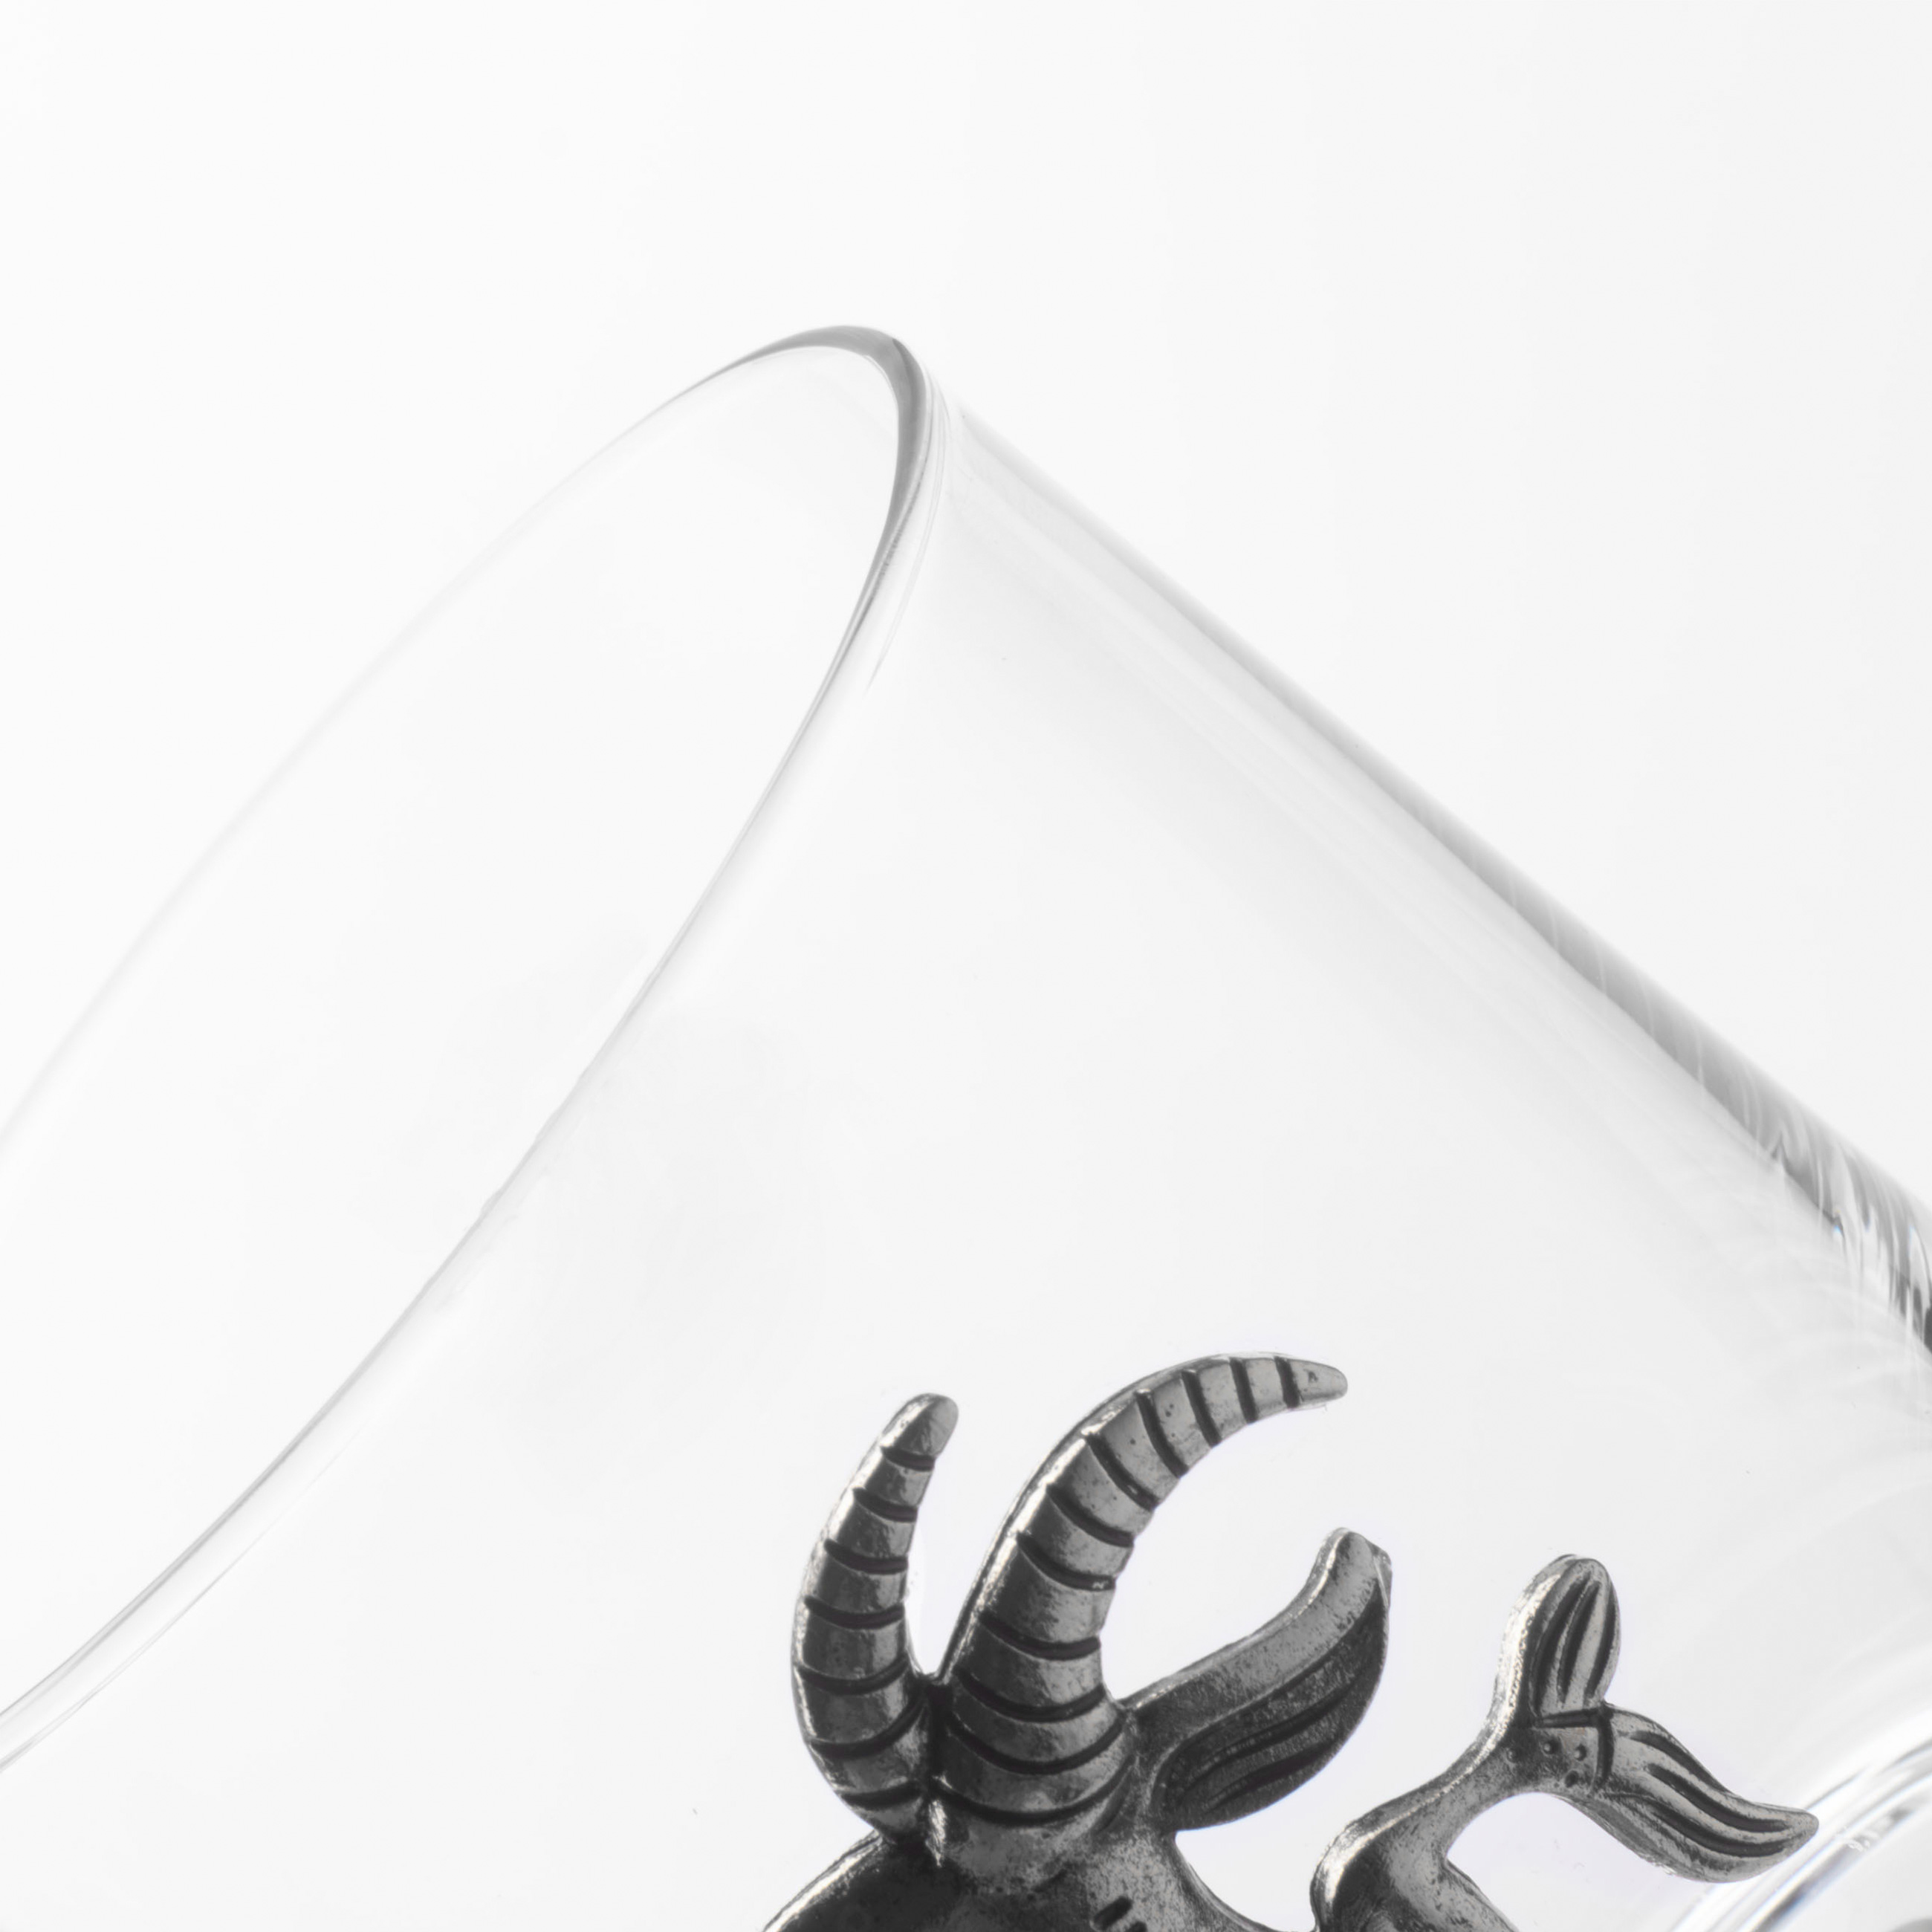 Стакан для виски, 340 мл, стекло/металл, серебристый, Козерог, Zodiac изображение № 4